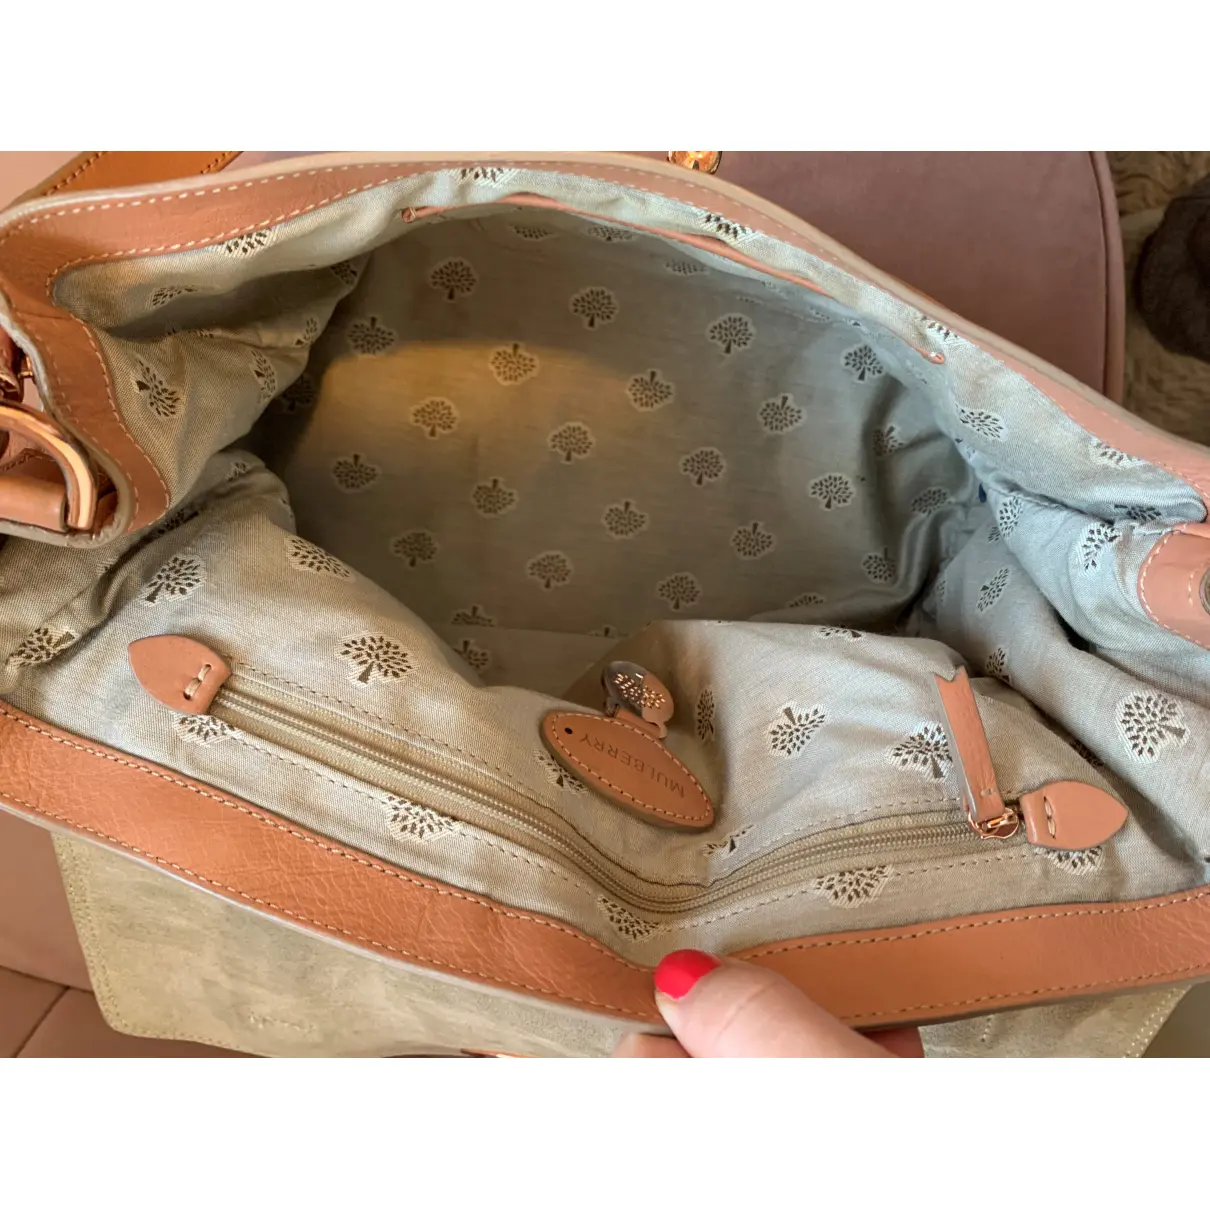 Alexa leather handbag Mulberry - Vintage